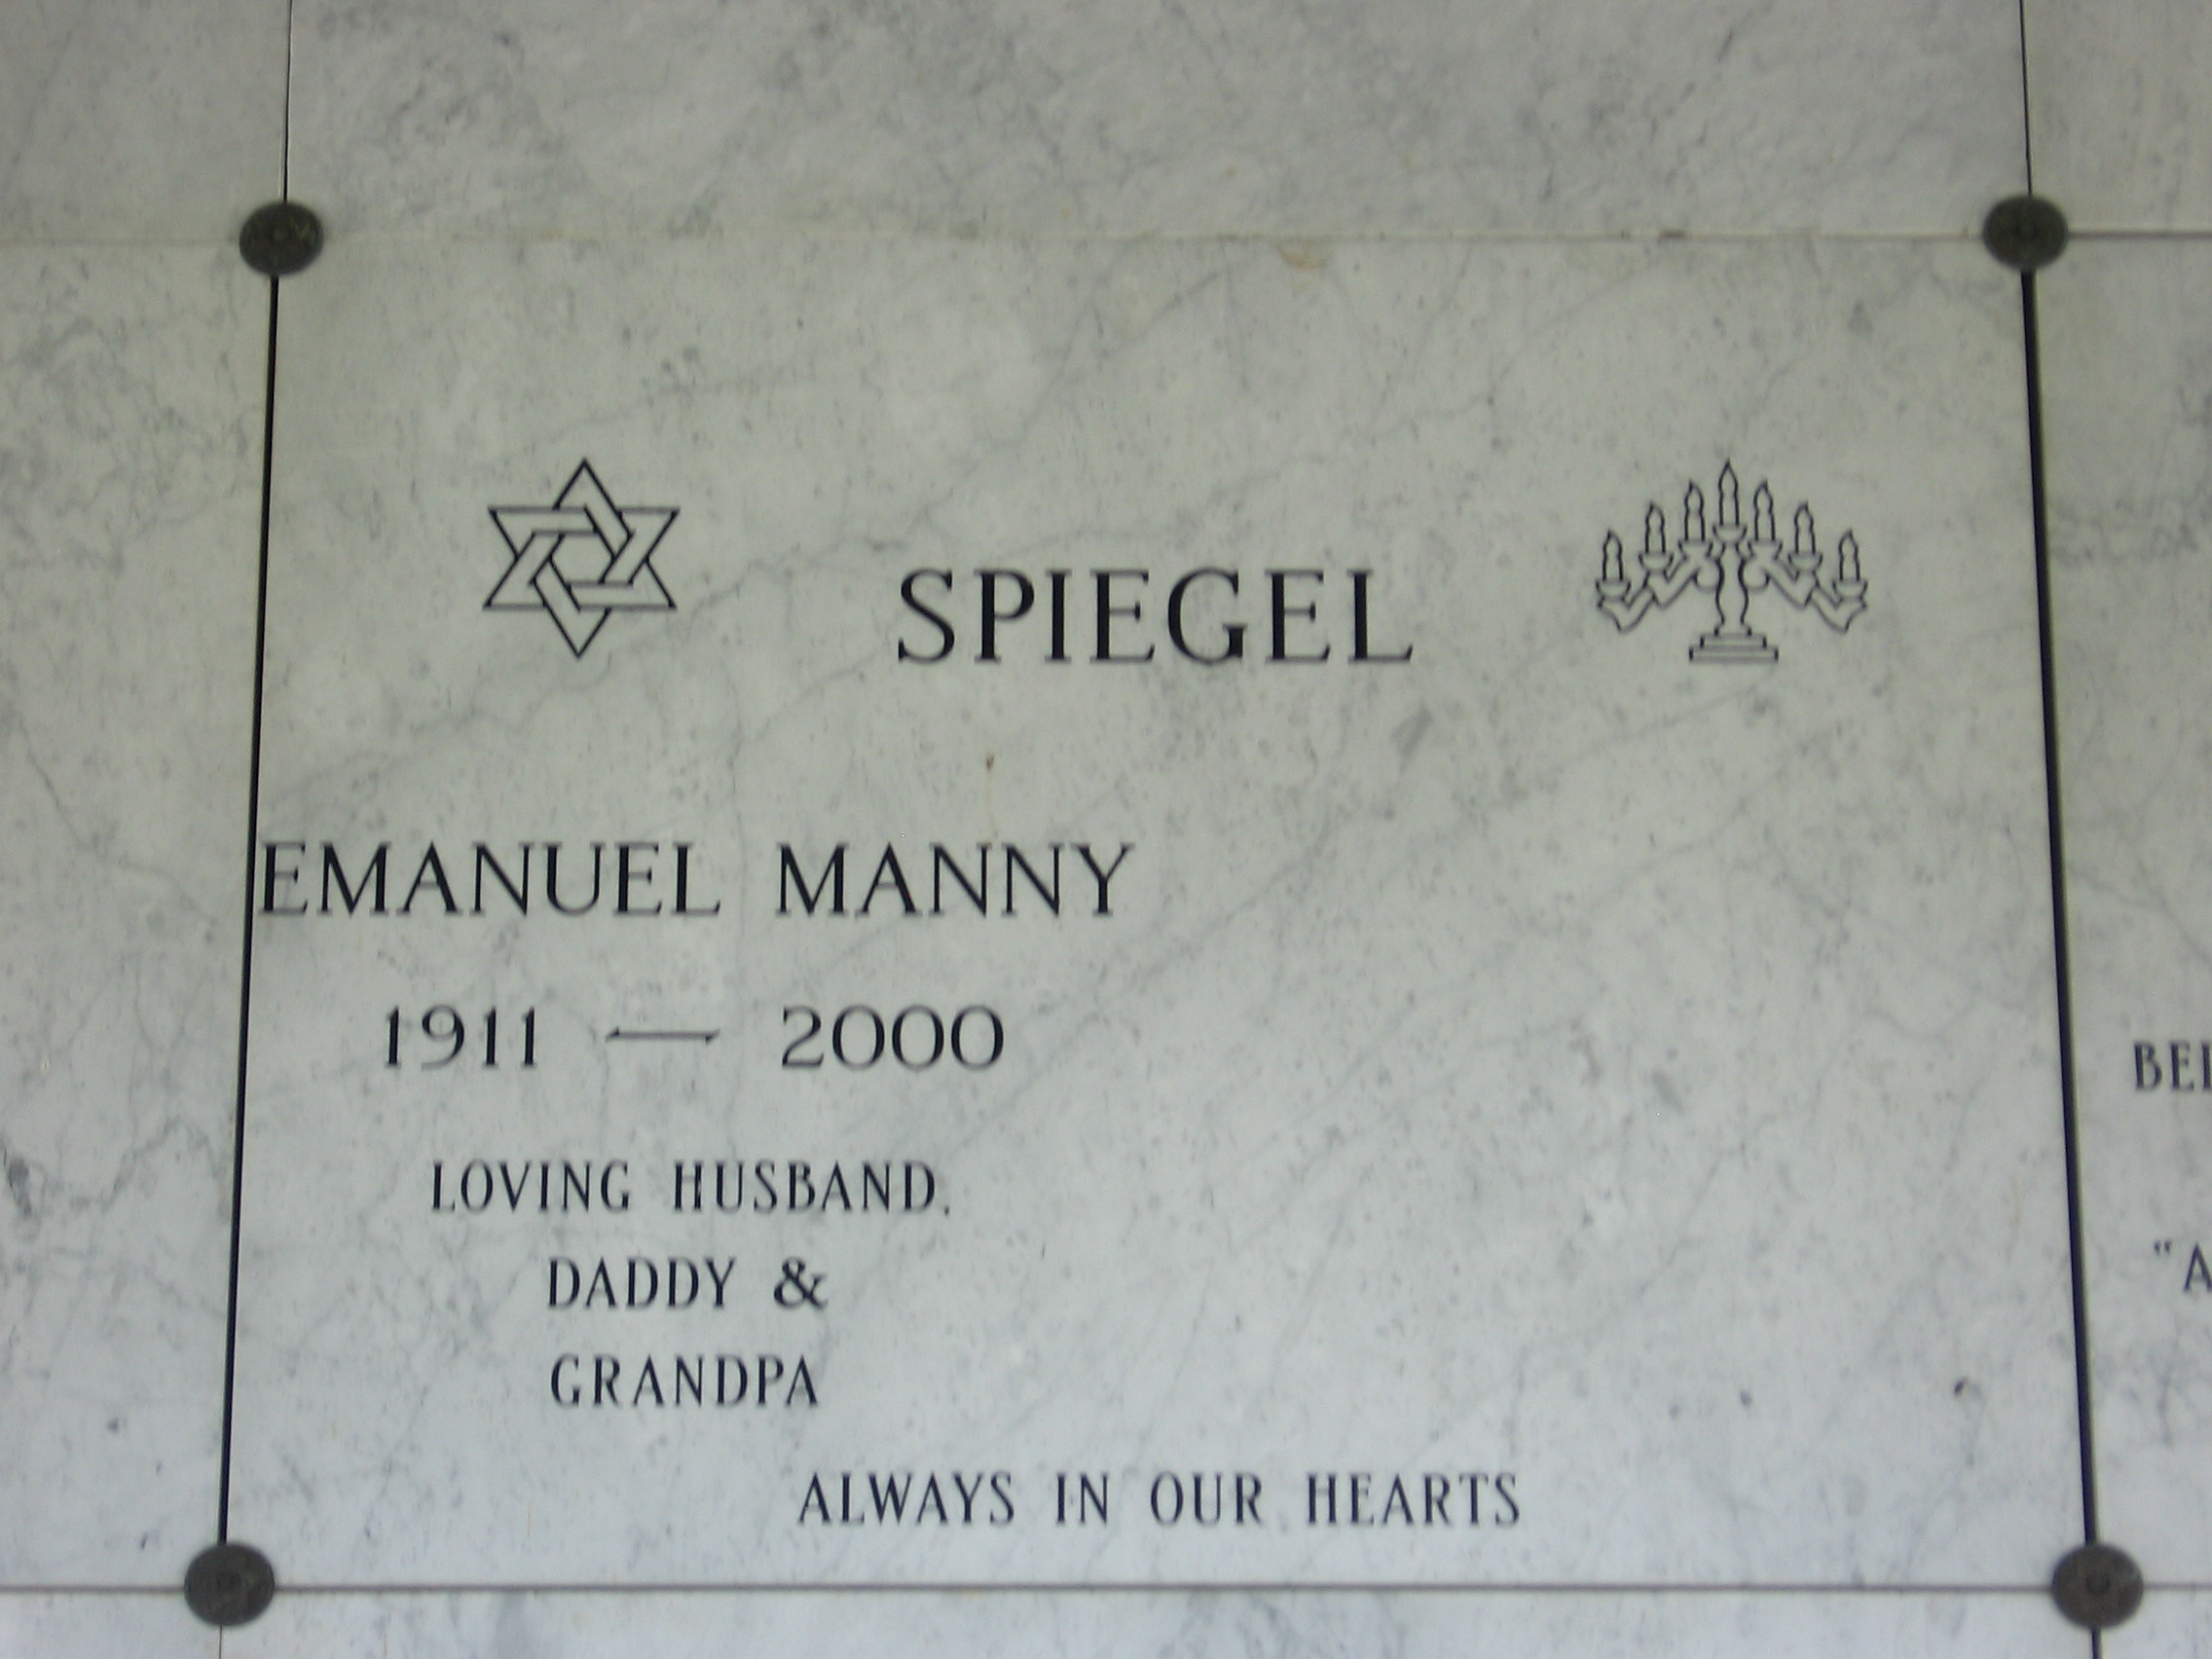 Emanuel Manny Spiegel